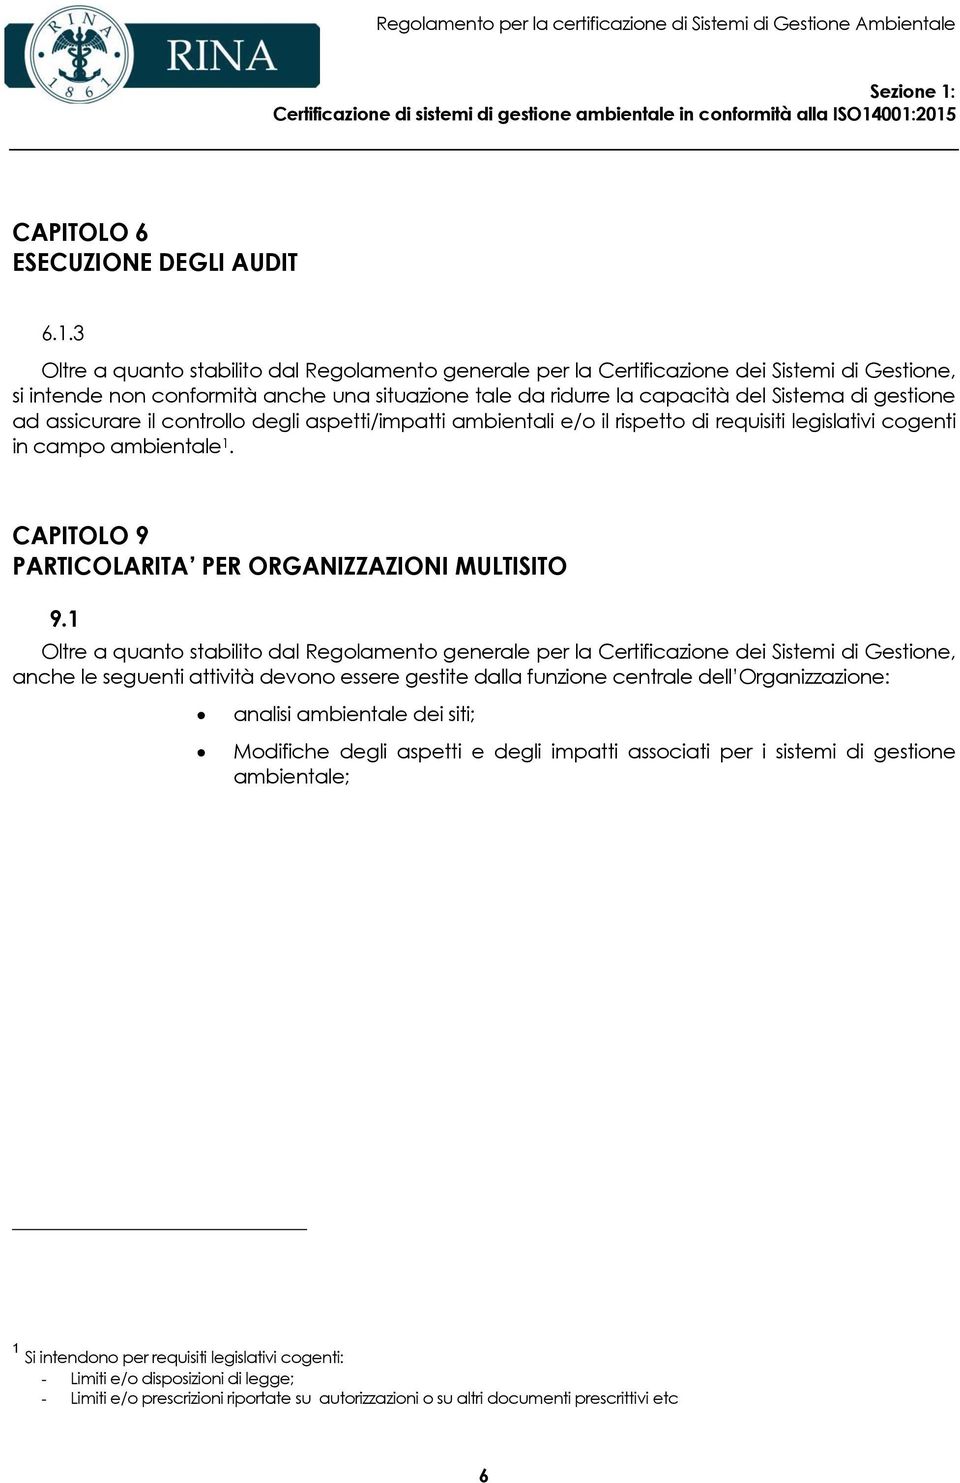 001:2015 CAPITOLO 6 ESECUZIONE DEGLI AUDIT 6.1.3 si intende non conformità anche una situazione tale da ridurre la capacità del Sistema di gestione ad assicurare il controllo degli aspetti/impatti